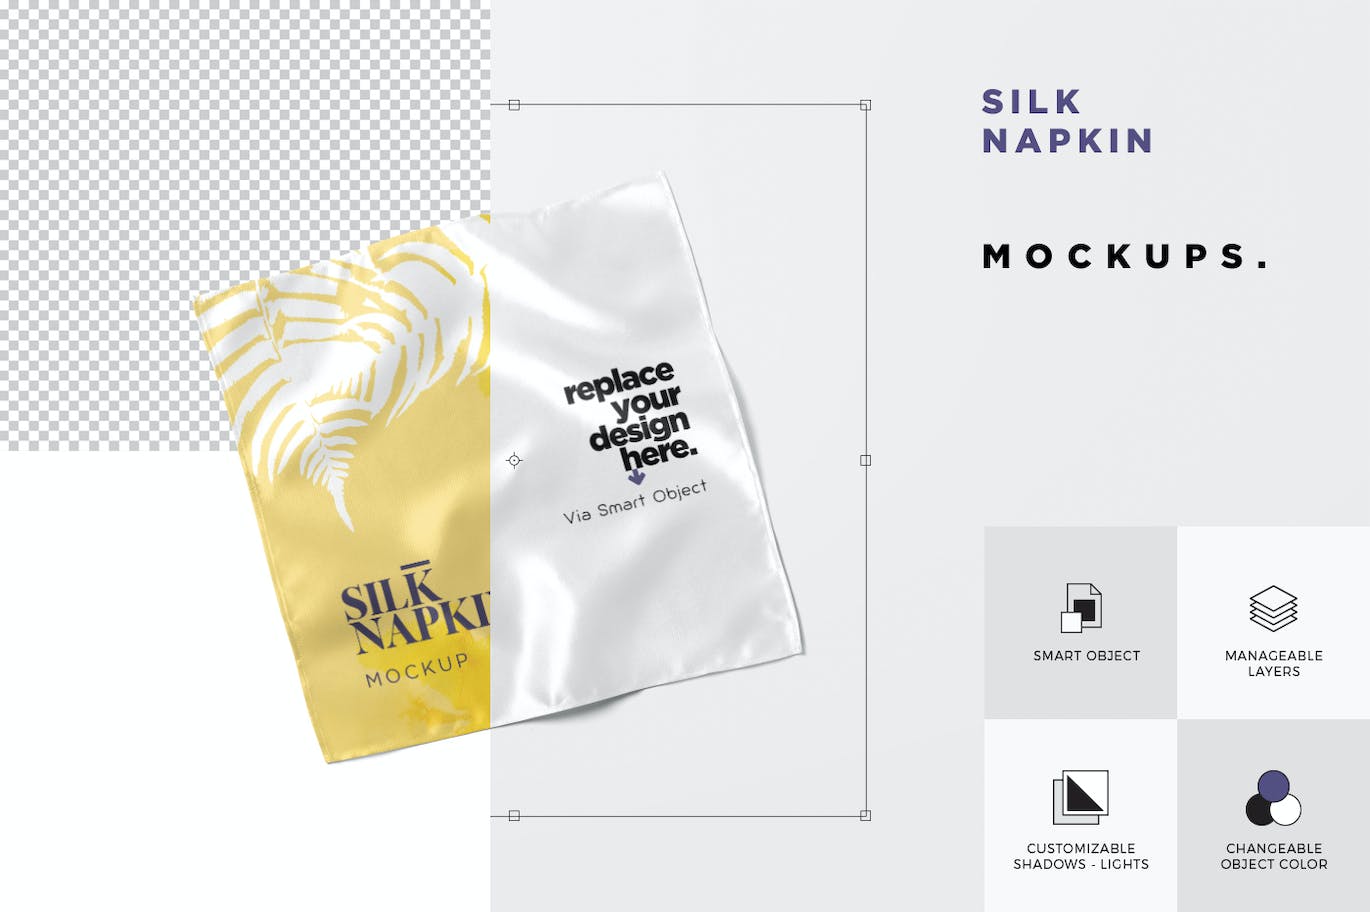 丝绸餐巾设计样机 Silk Napkin Mockups 样机素材 第4张